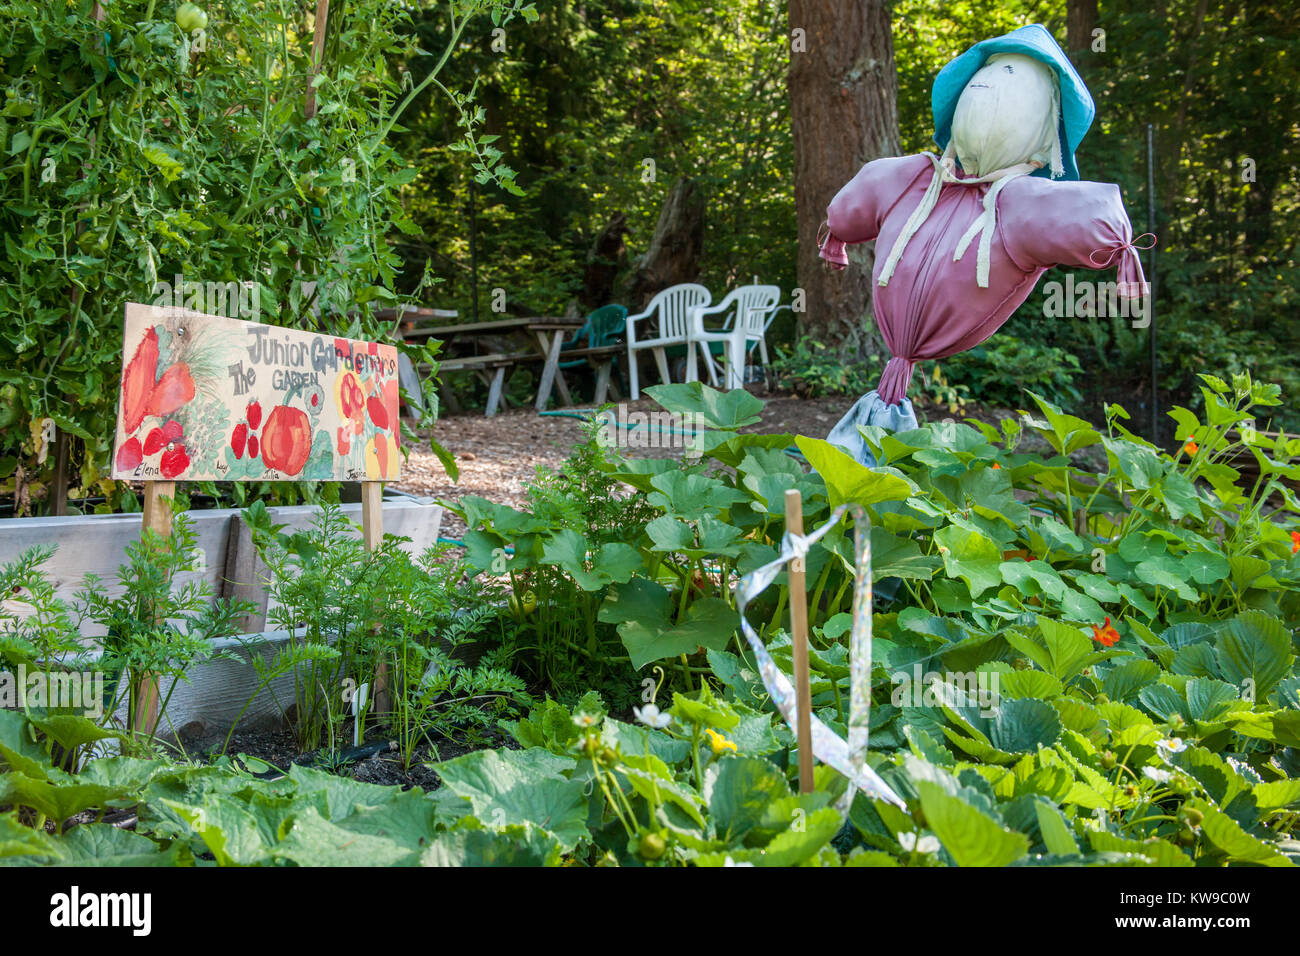 Junior del giardiniere letto rialzato giardino in una comunità pea patch plot, completa con una ragazza lo spaventapasseri hanno reso, Issaquah, Washington, Stati Uniti d'America. Foto Stock